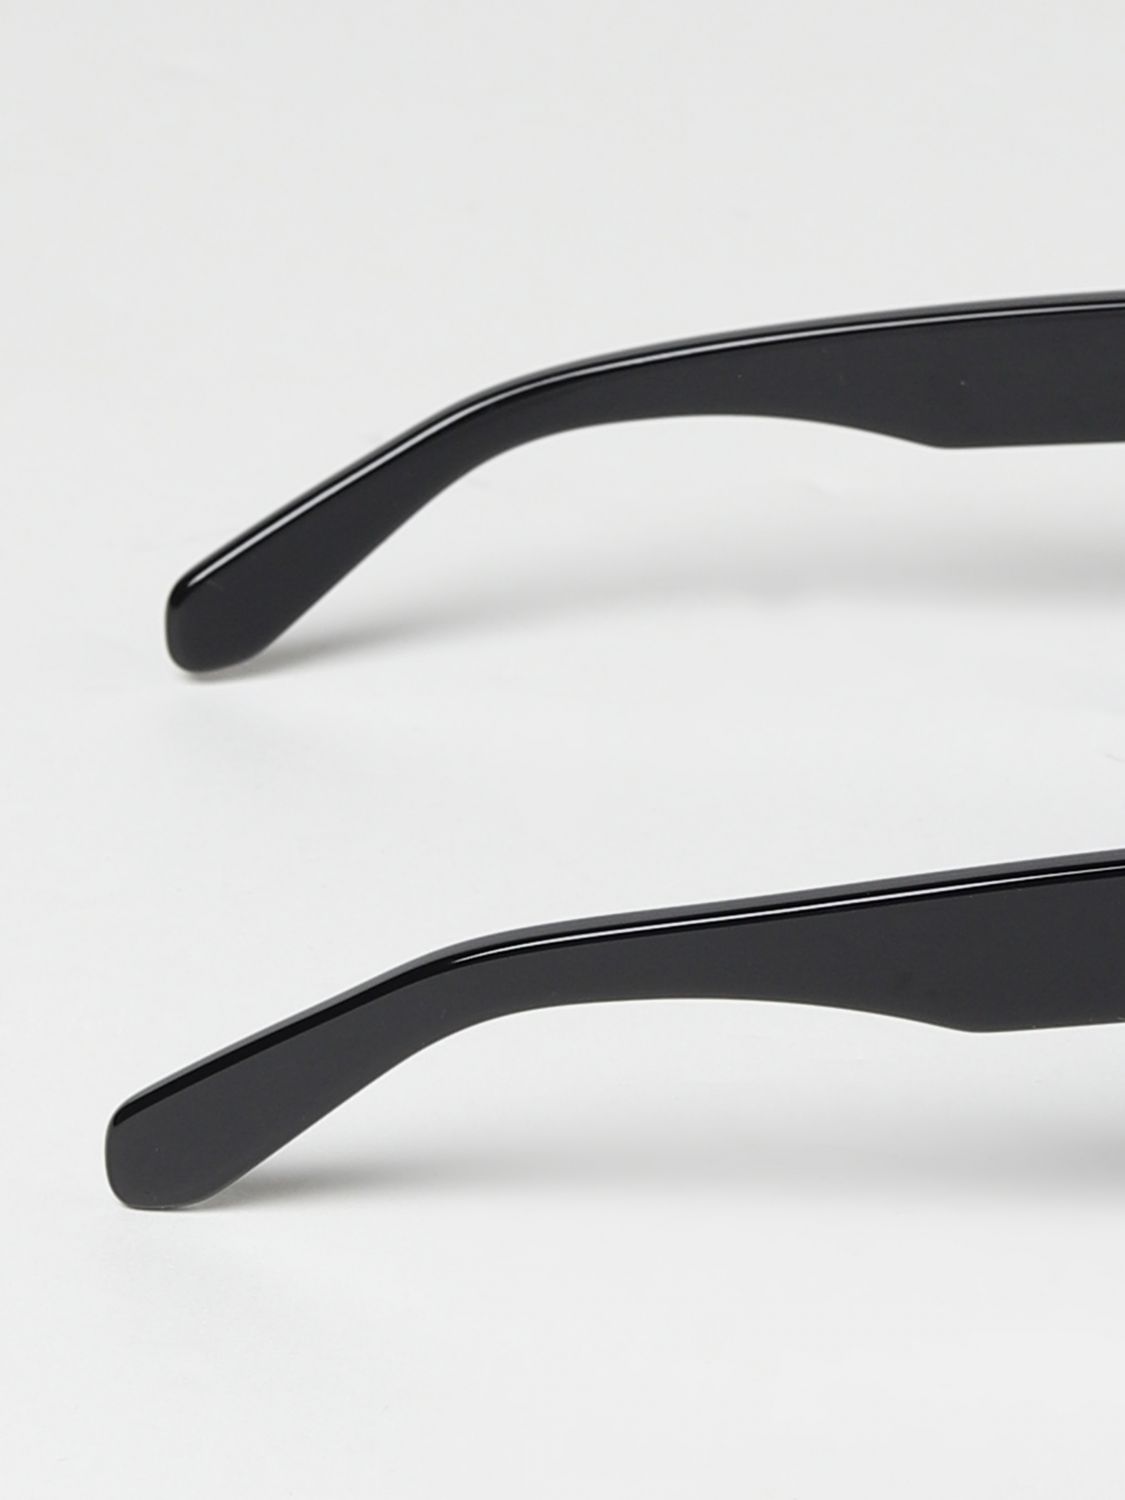 Off-White Virgil Sunglasses OERI008C99PLA0011007 Black Frame Dark Grey Lens  8052865781282